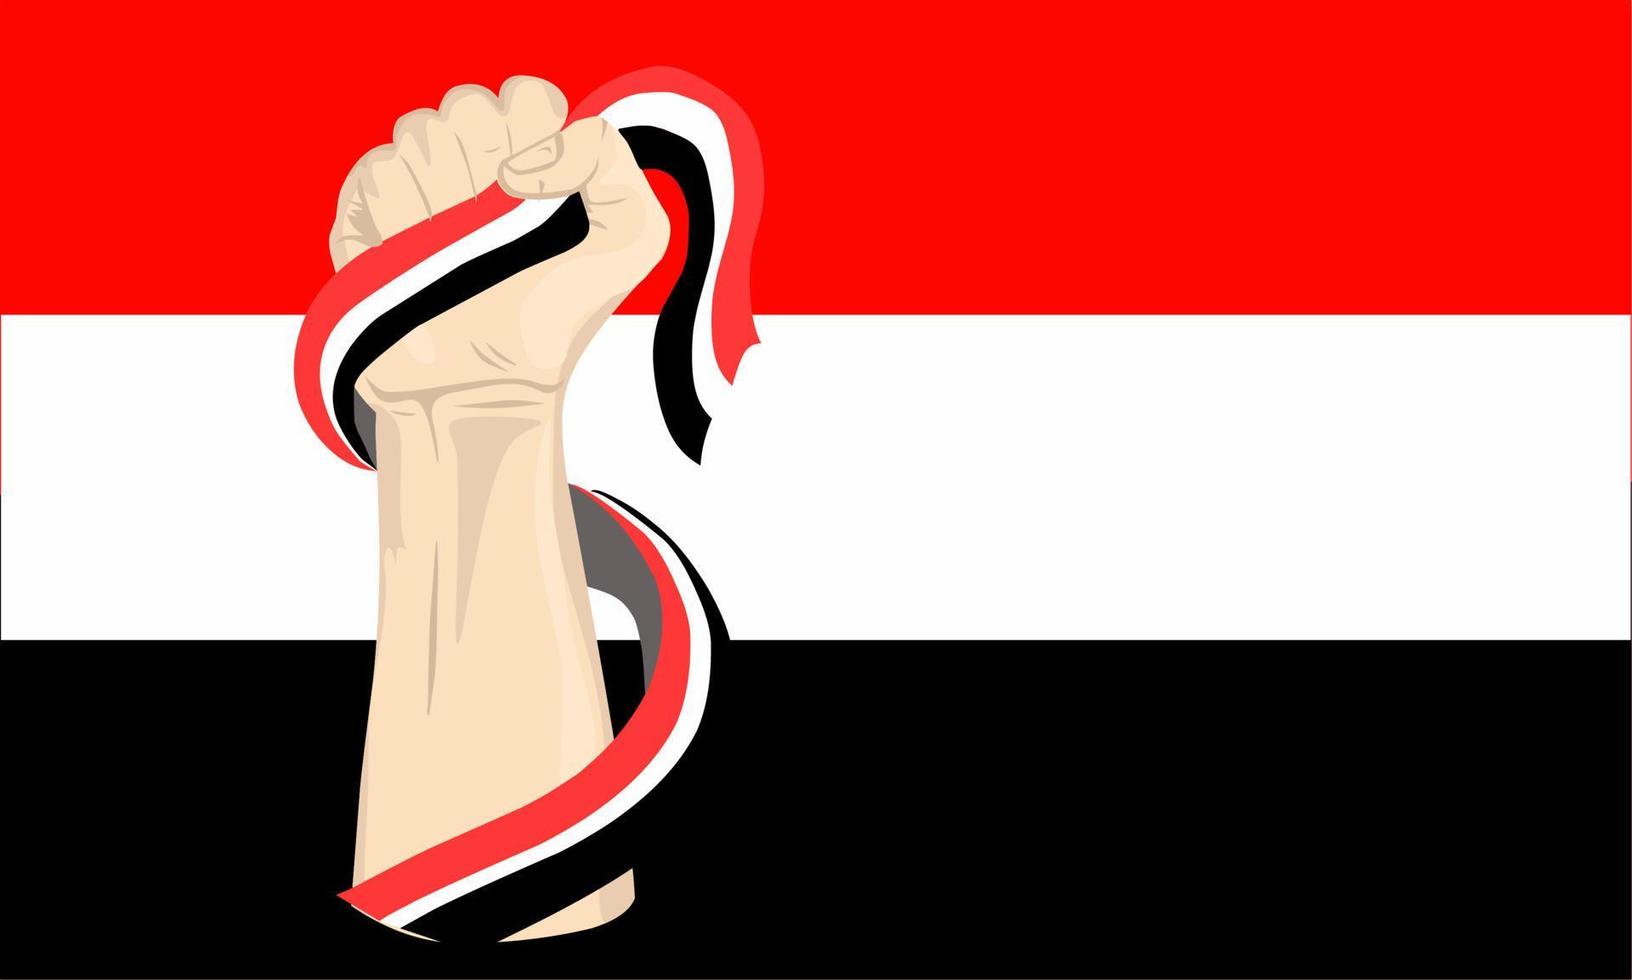 Illustrationsvektorgrafik des Jemen-Unabhängigkeitstags mit der Hand, die die Jemen-Flagge hält. perfekt für Feierlichkeiten zum Unabhängigkeitstag. Banner-Design vektor